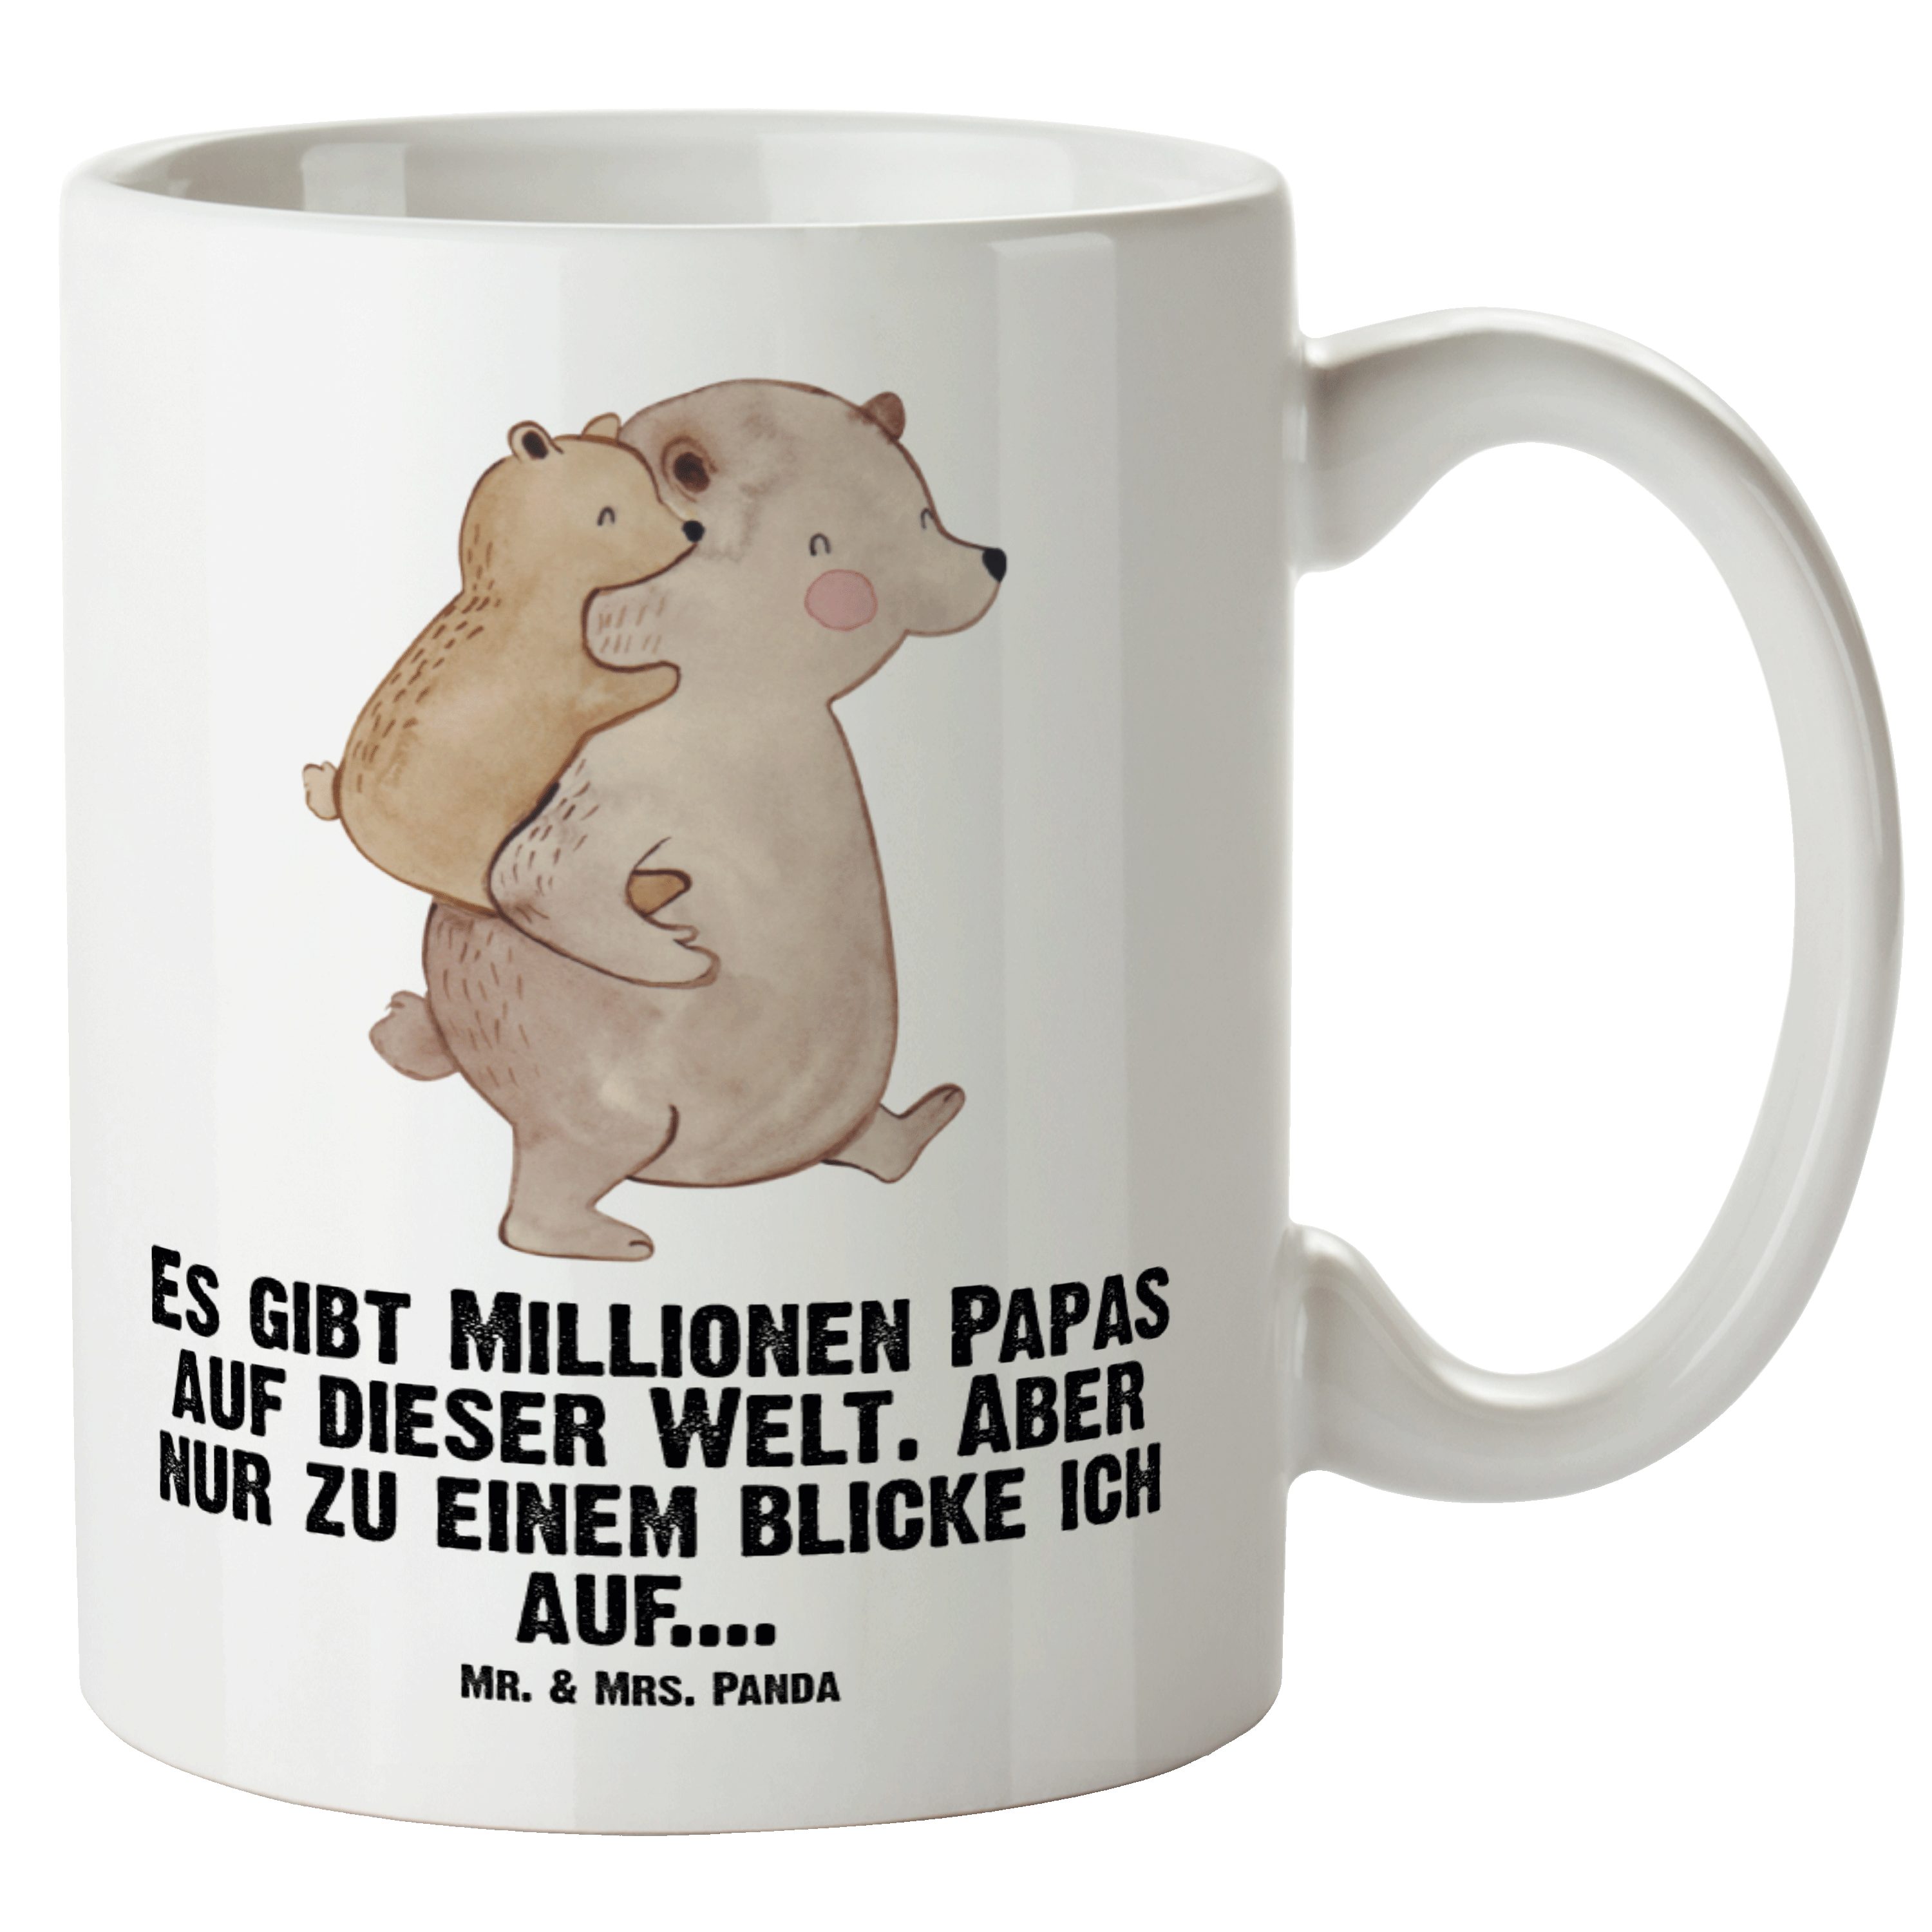 Mr. & Mrs. Panda Tasse Papa Bär - Weiß - Geschenk, Muttertag, Große Tasse, Schwester, Grosse, XL Tasse Keramik | Tassen